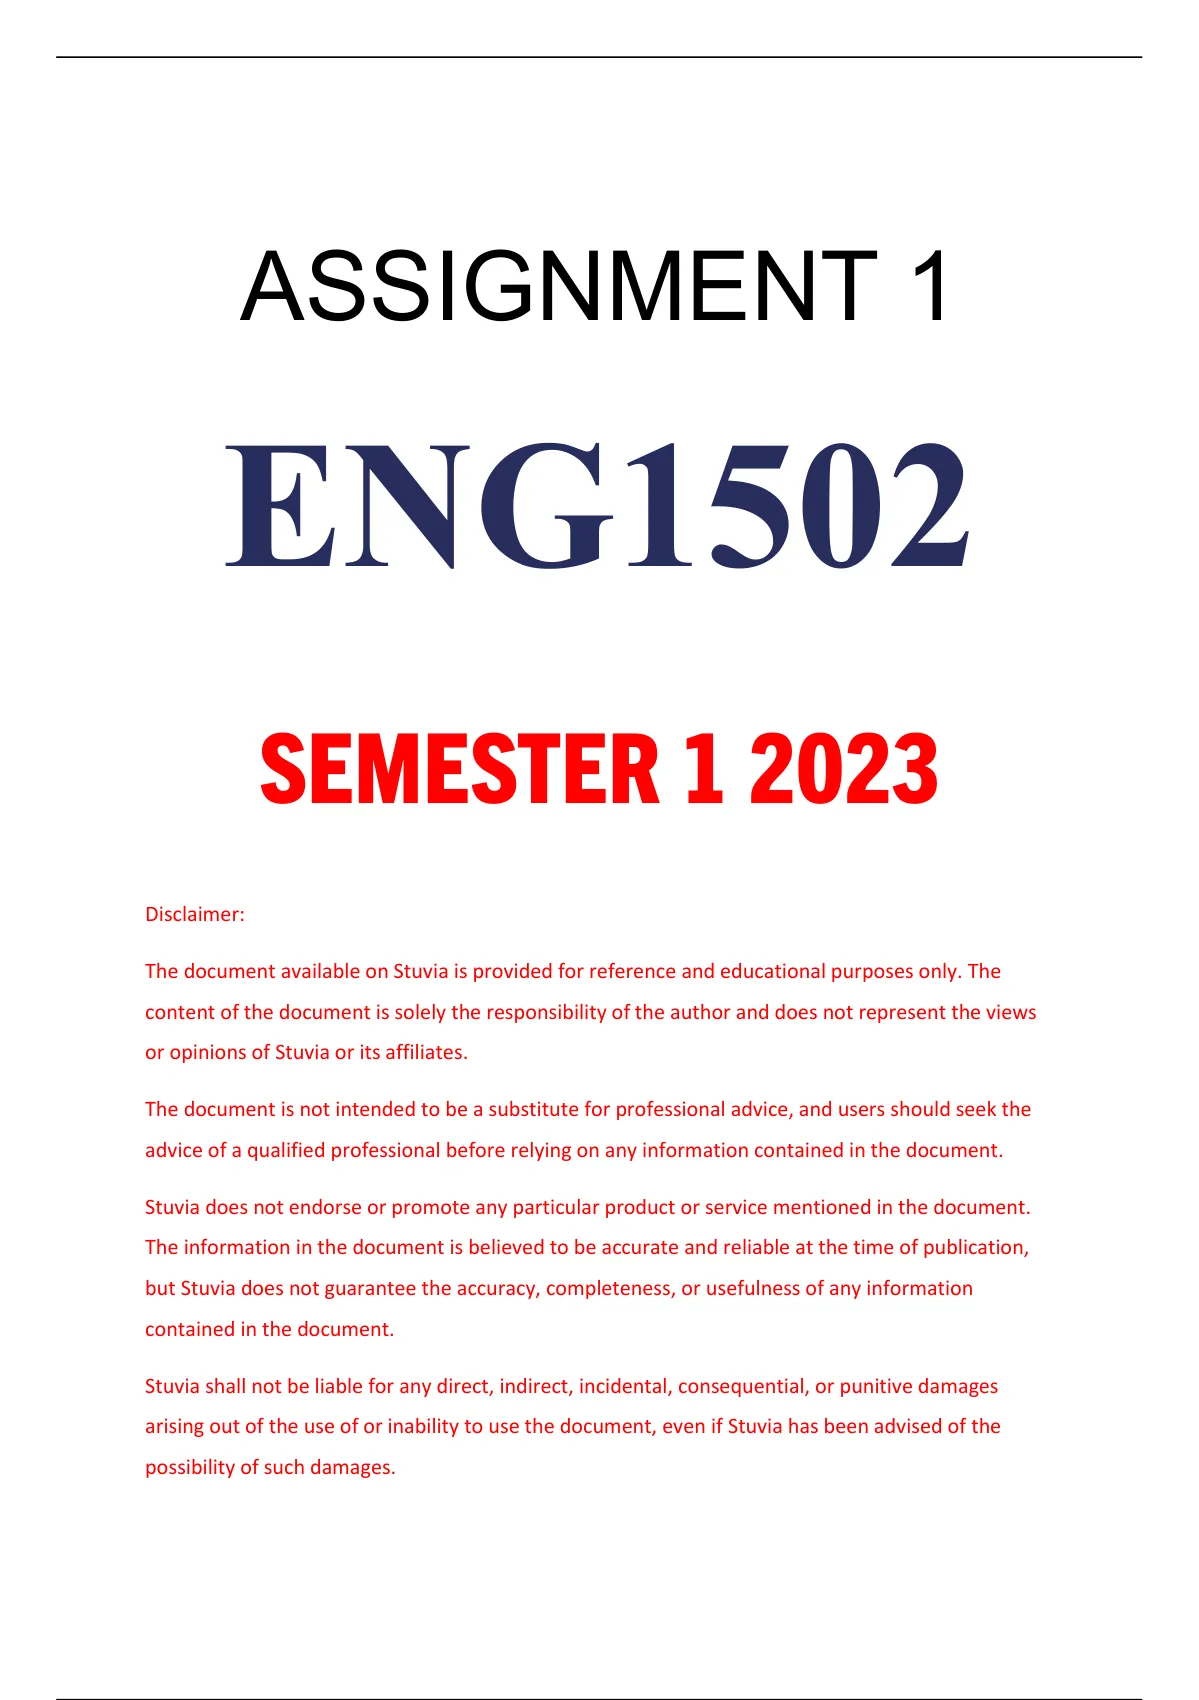 eng1502 assignment 1 2023